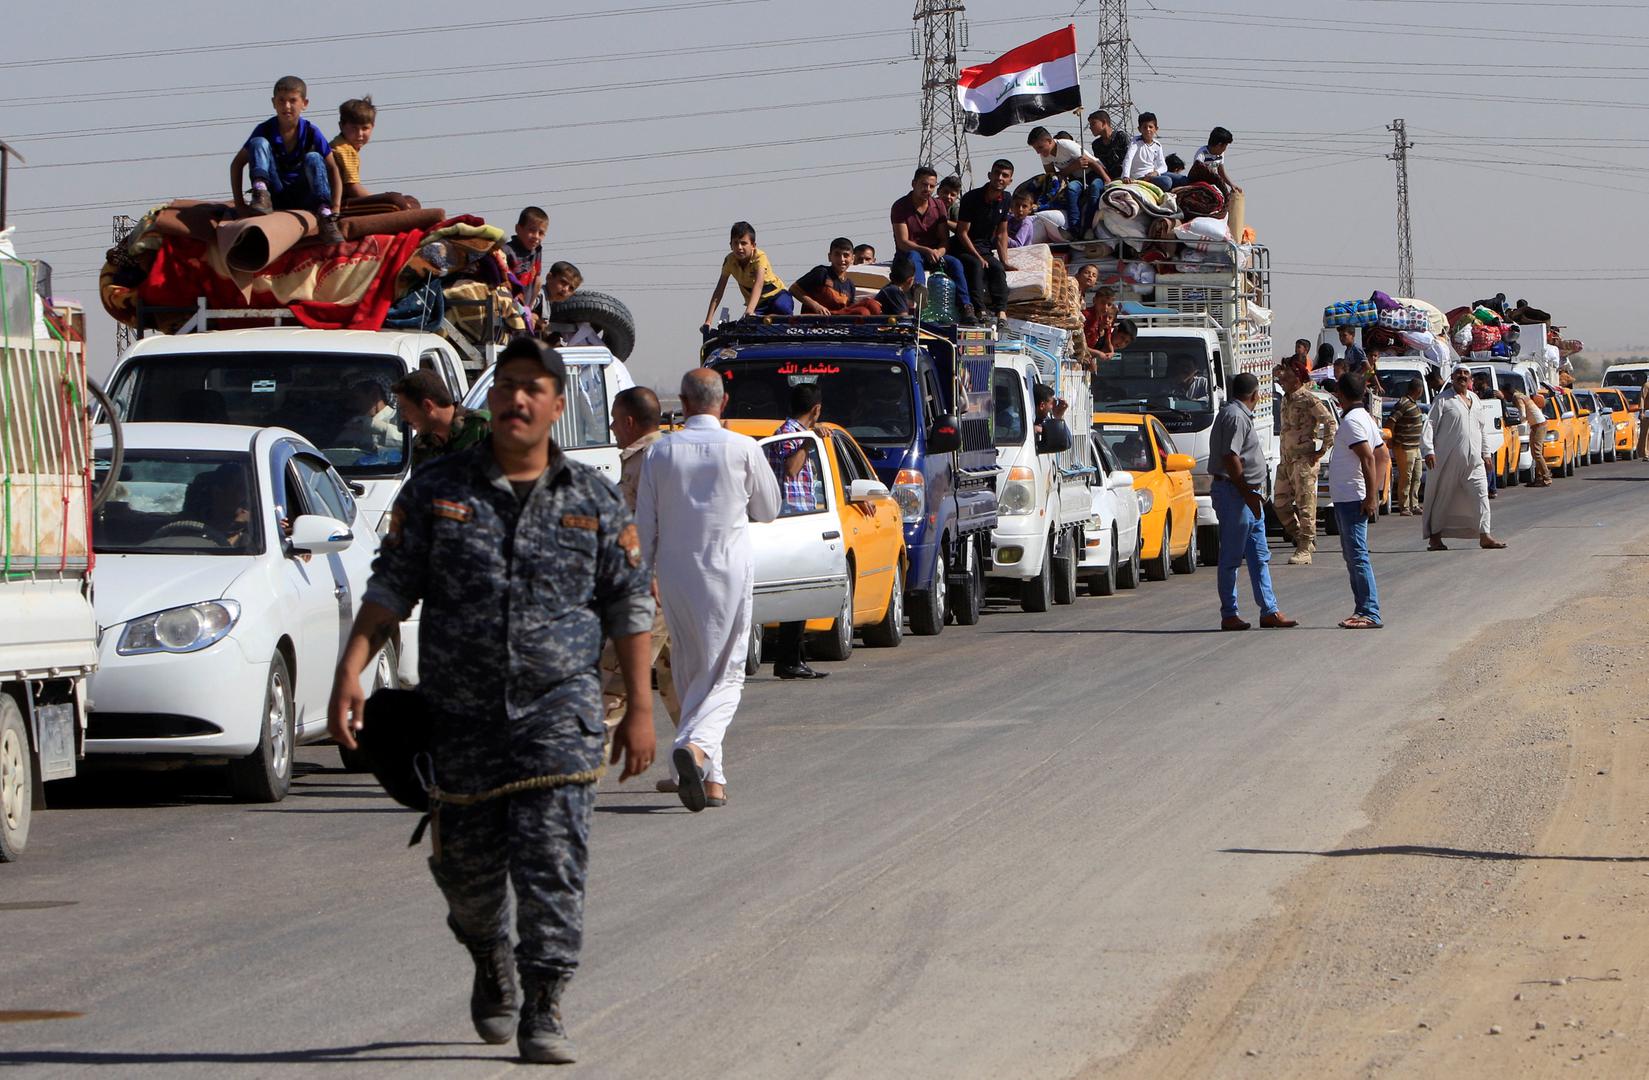 Dio iračkog stanovništva pozdravio je dolazak vojnih snaga iz Bagdada